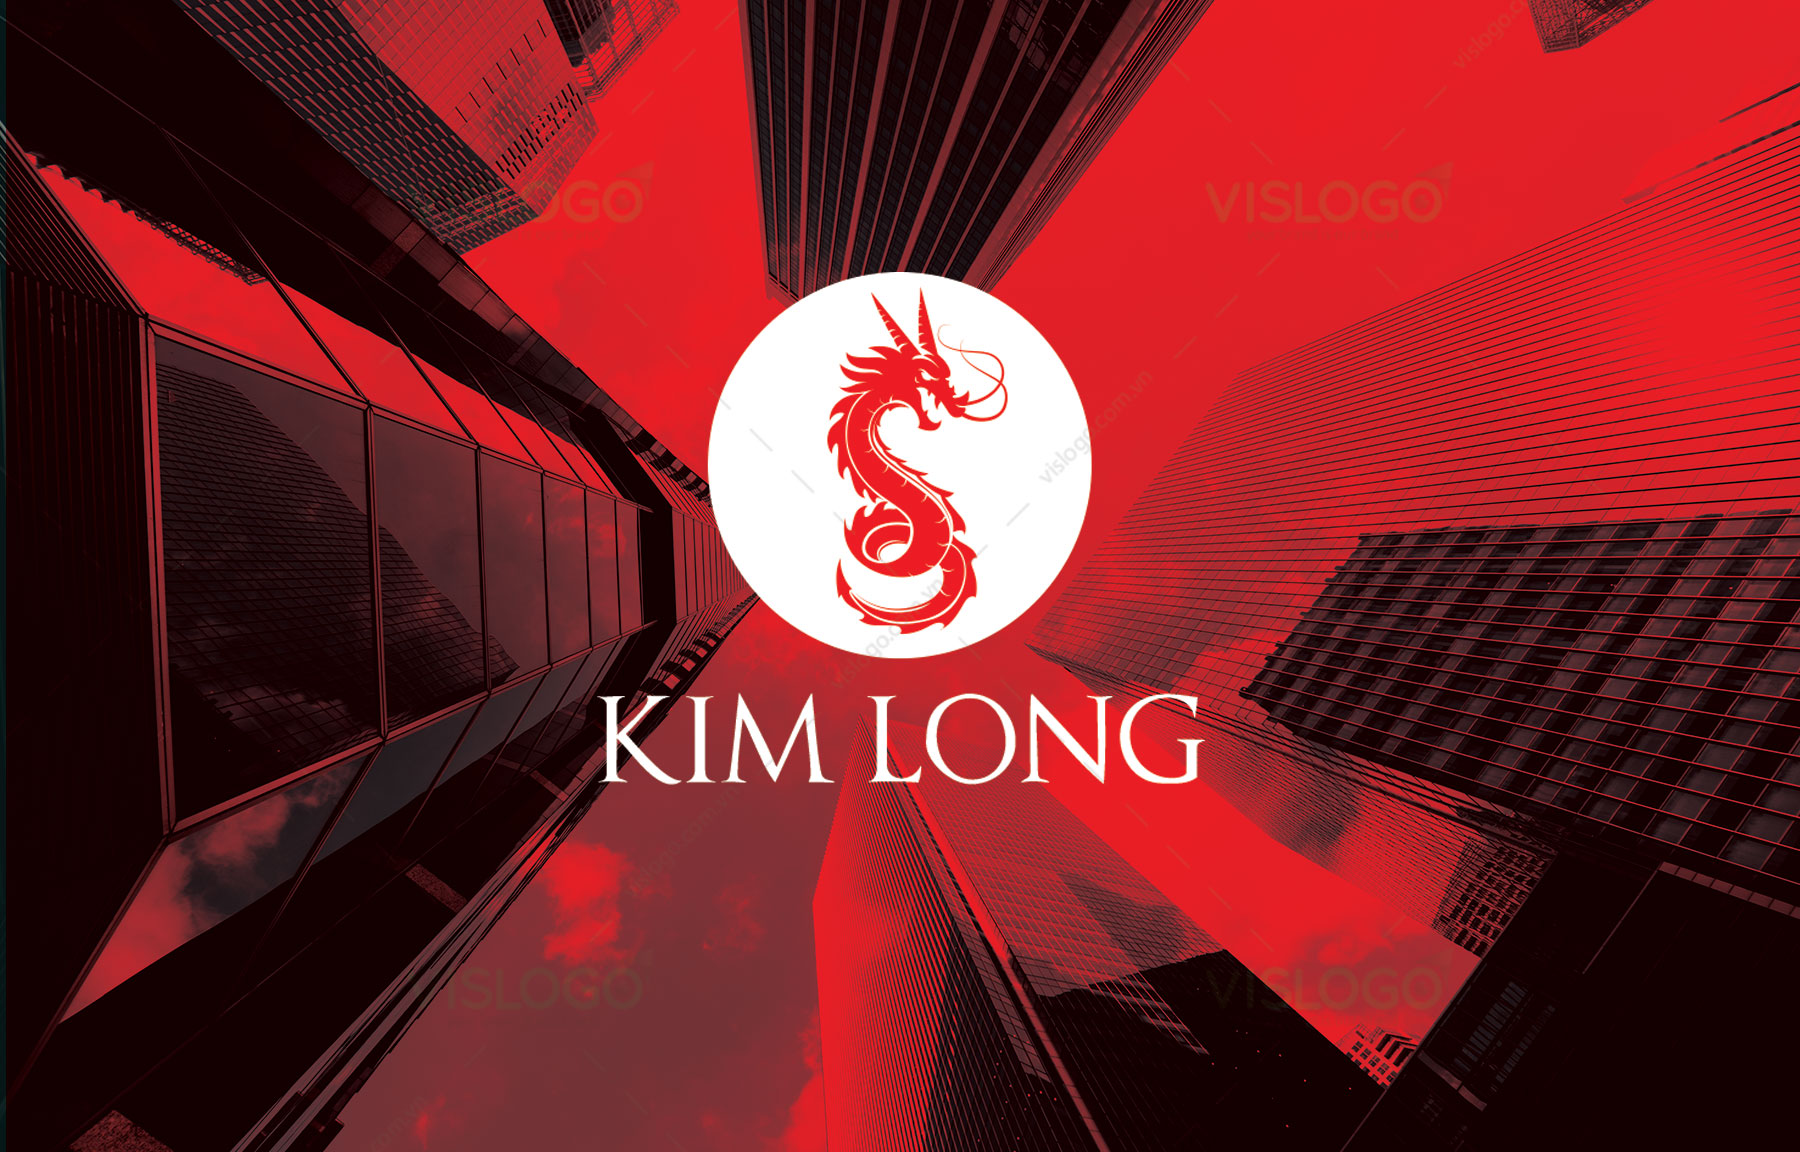 Thiết kế logo, ấn phẩm nhận diện, profile Tư vấn Xây dựng Kim Long